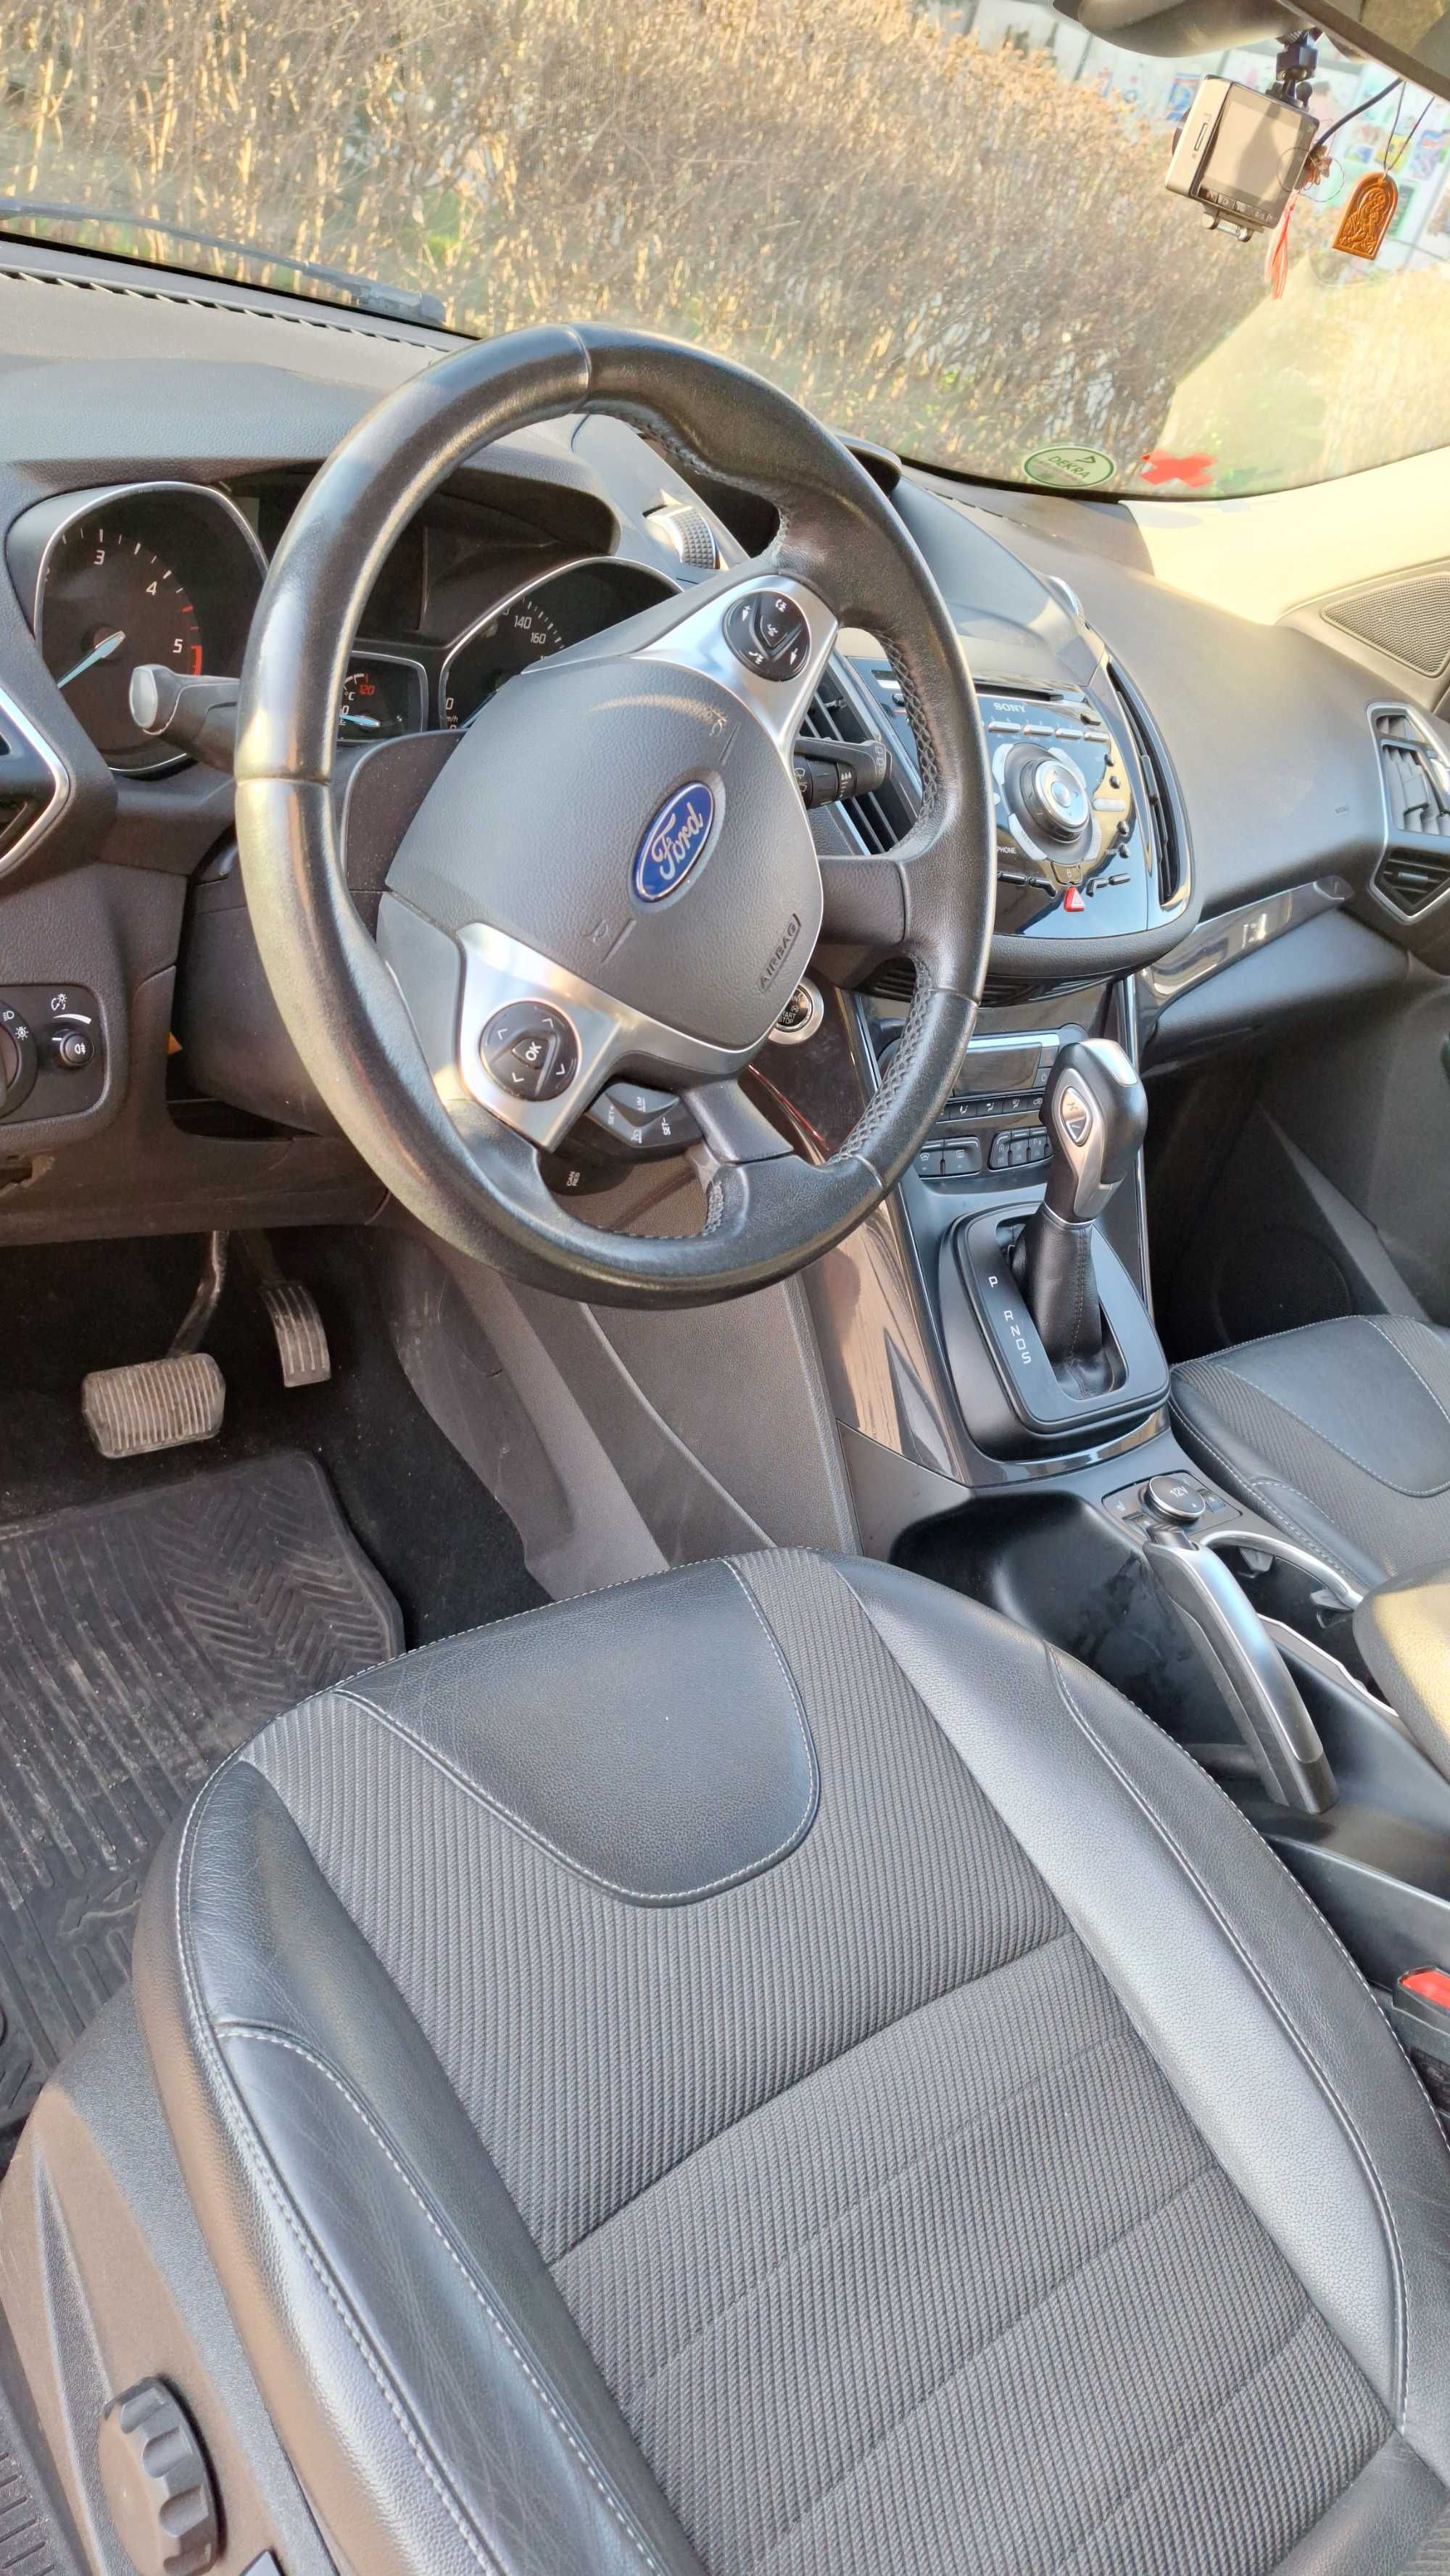 Ford Kuga 2015 180 cai AWD Automata